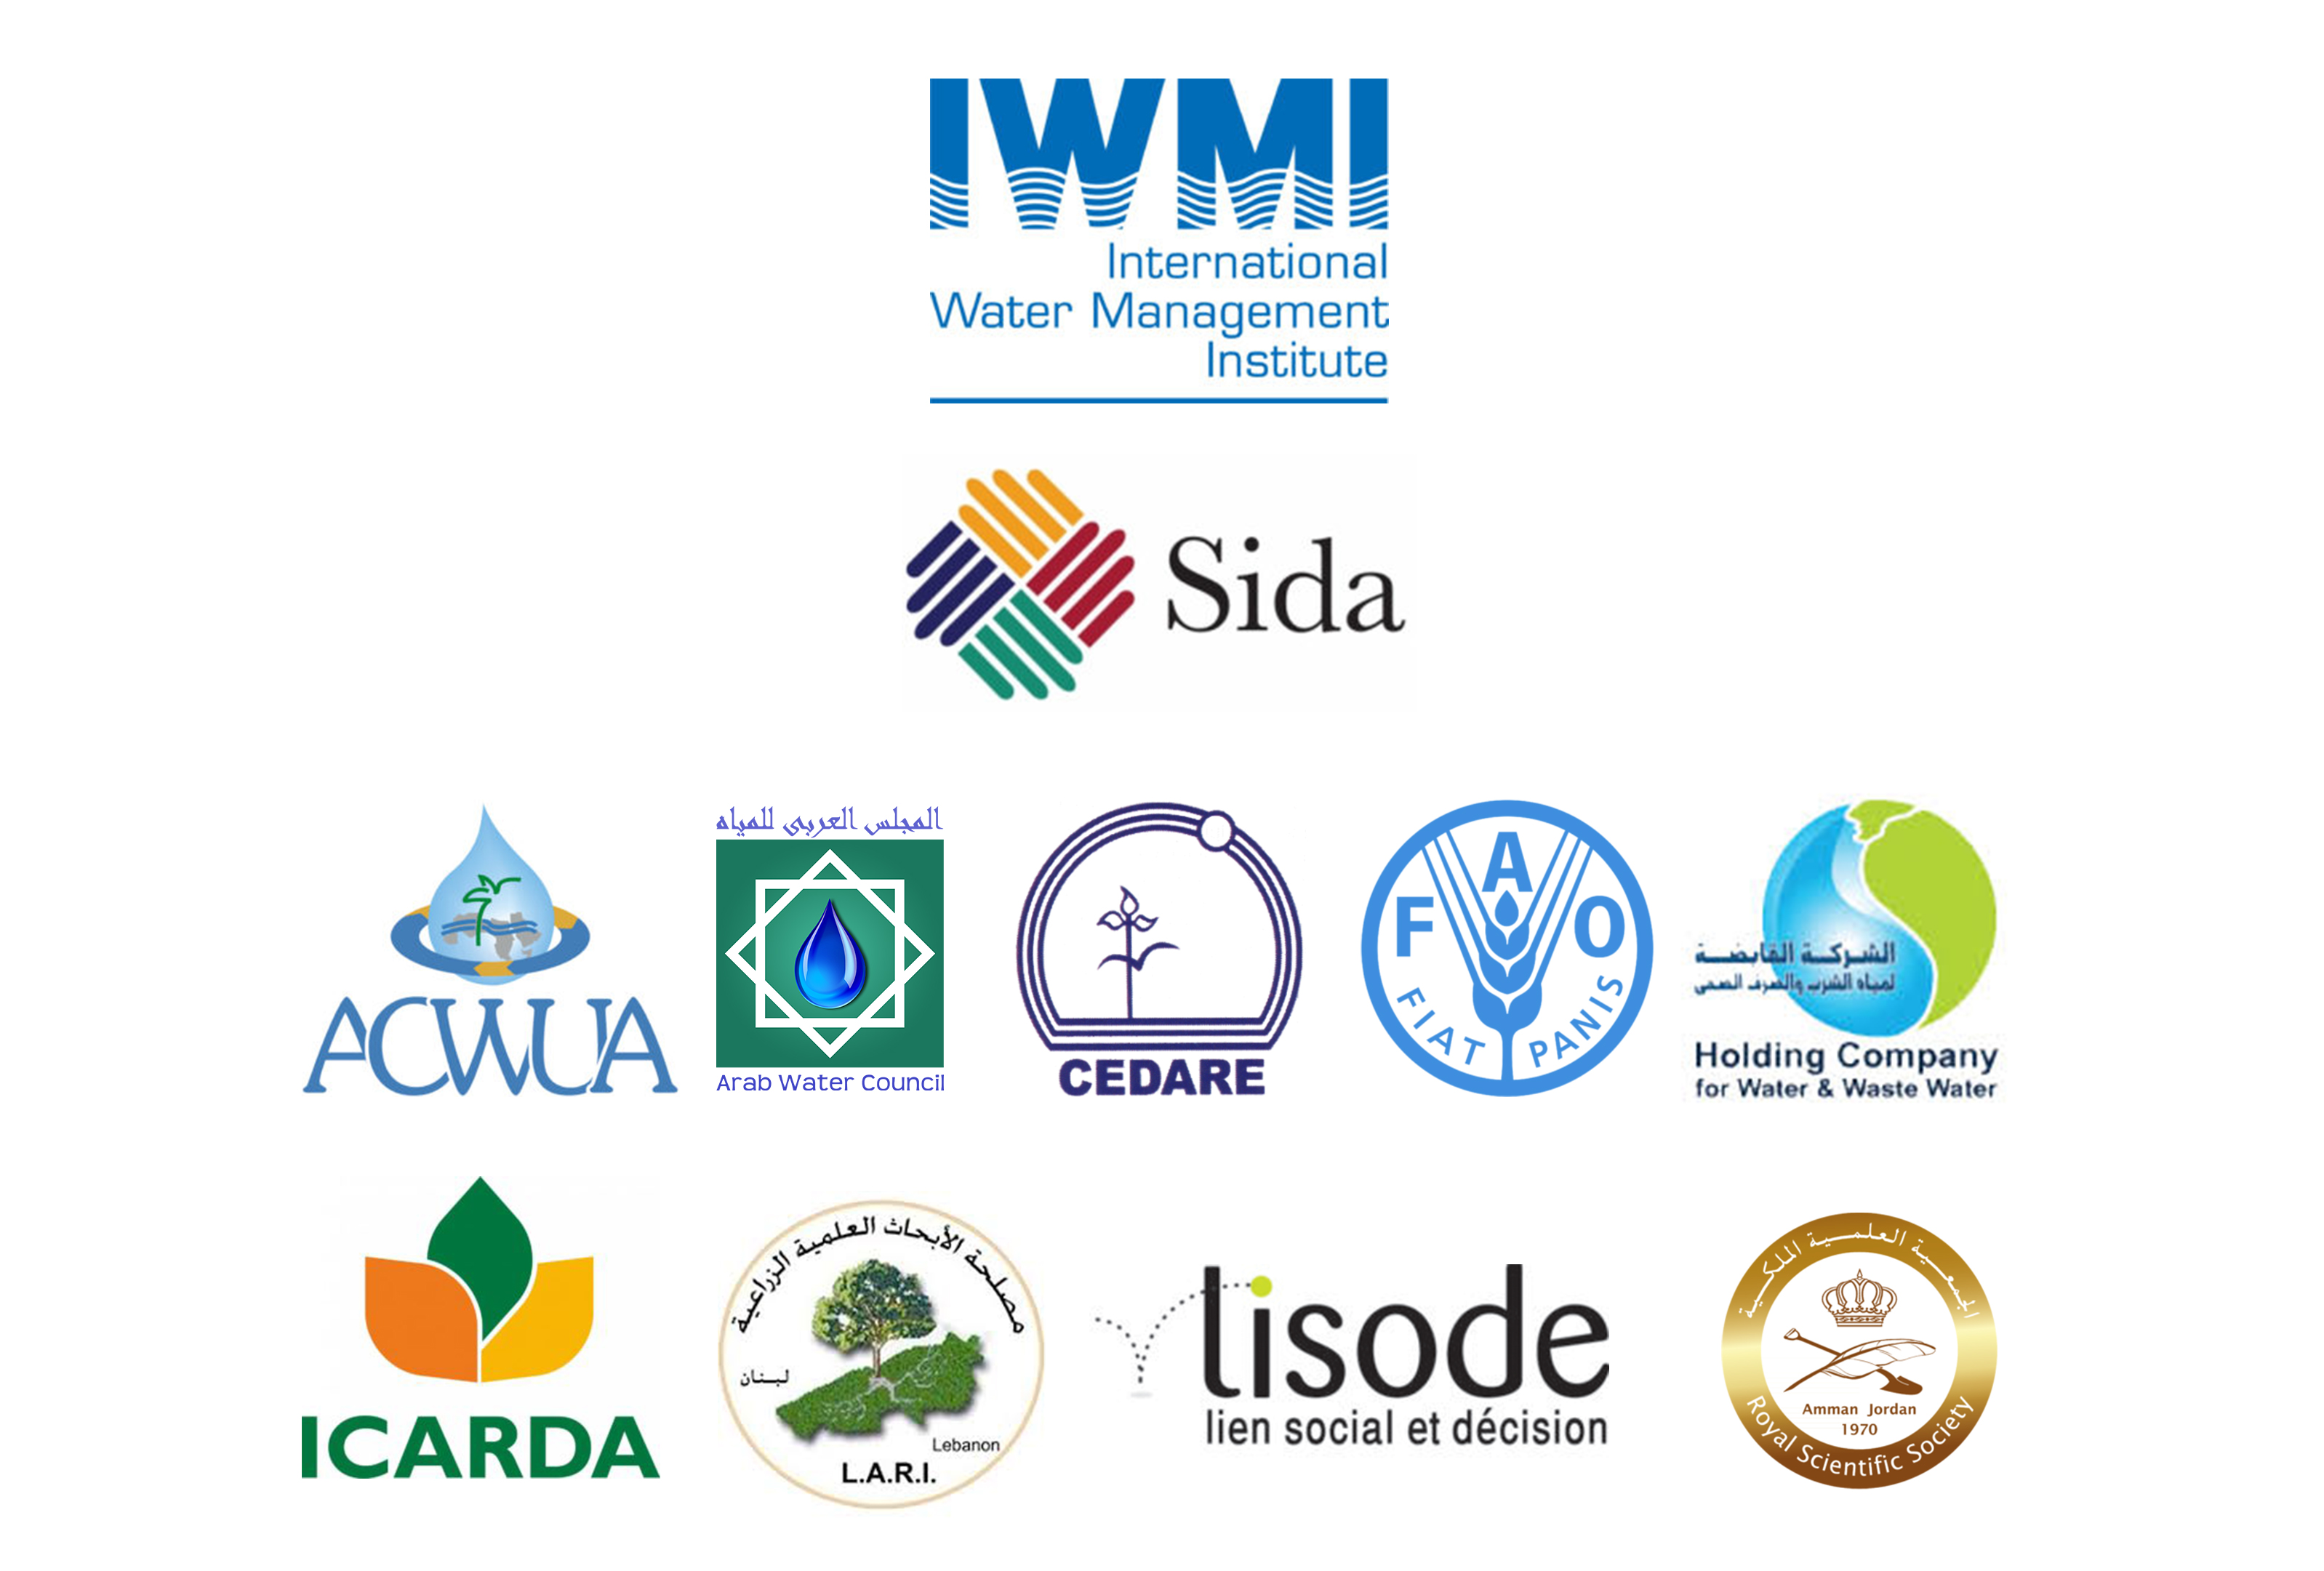 IWMI logos